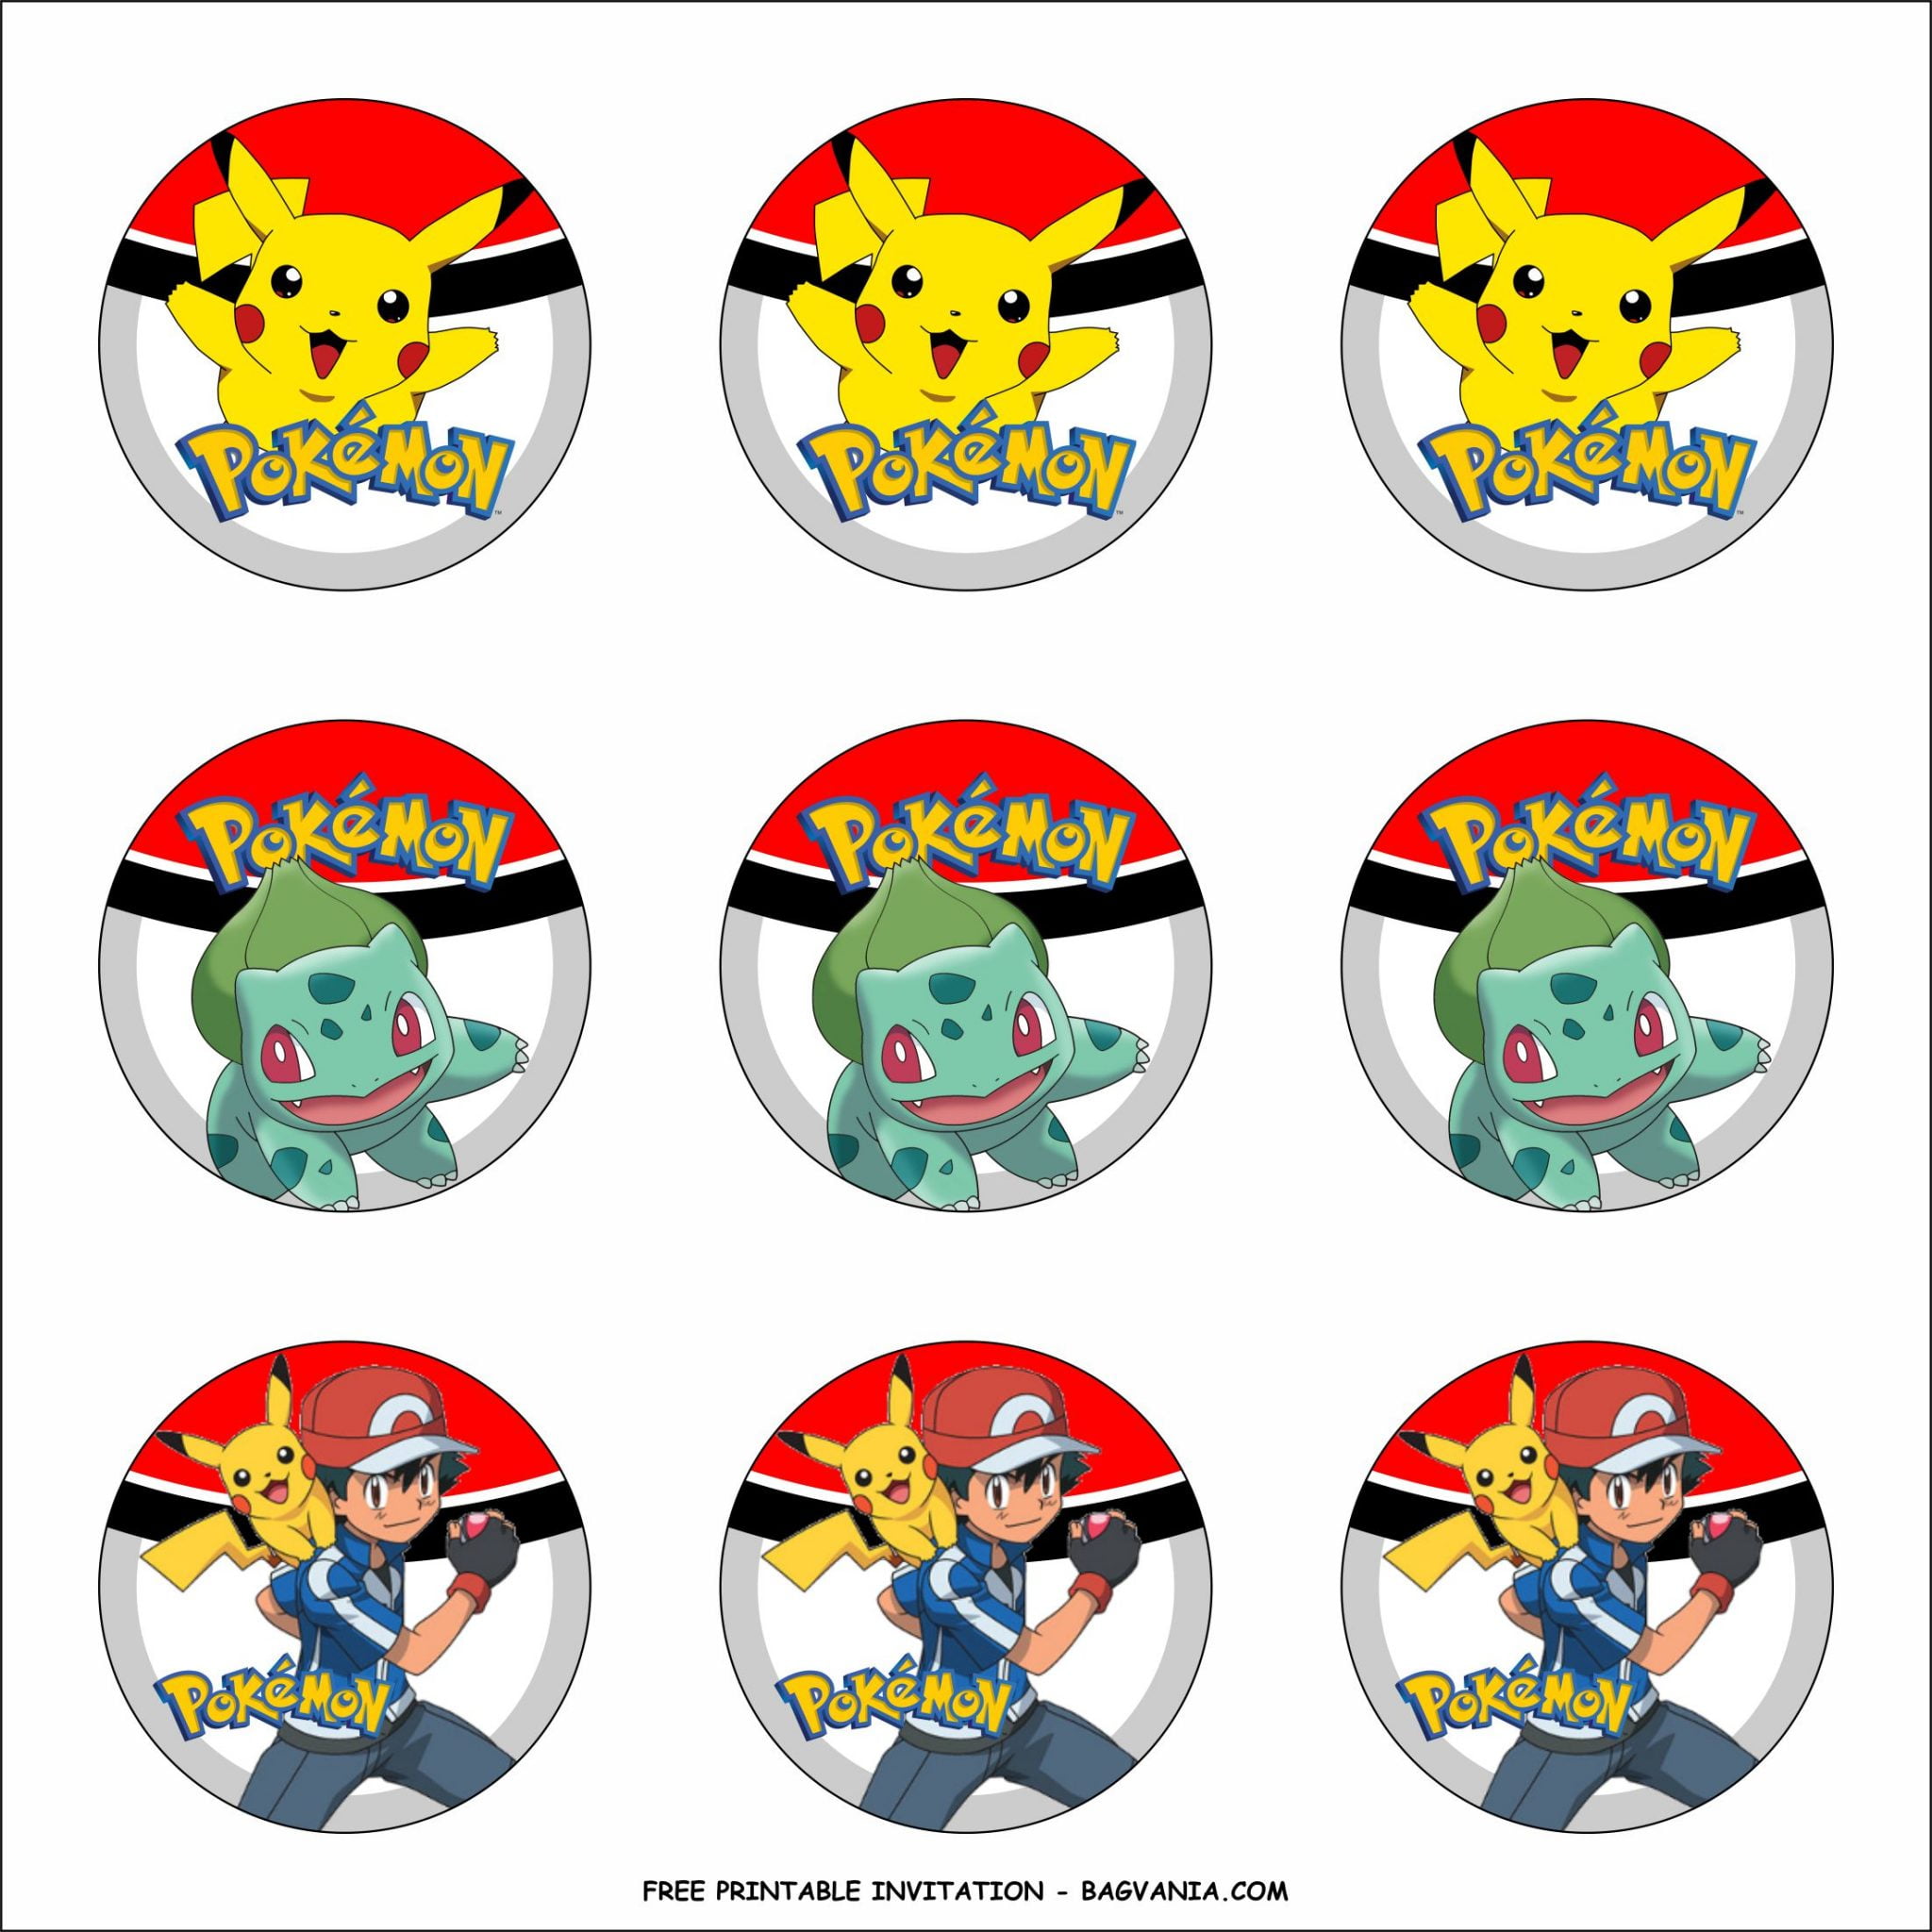 free-printable-pokemon-birthday-party-kits-template-free-printable-birthday-invitation